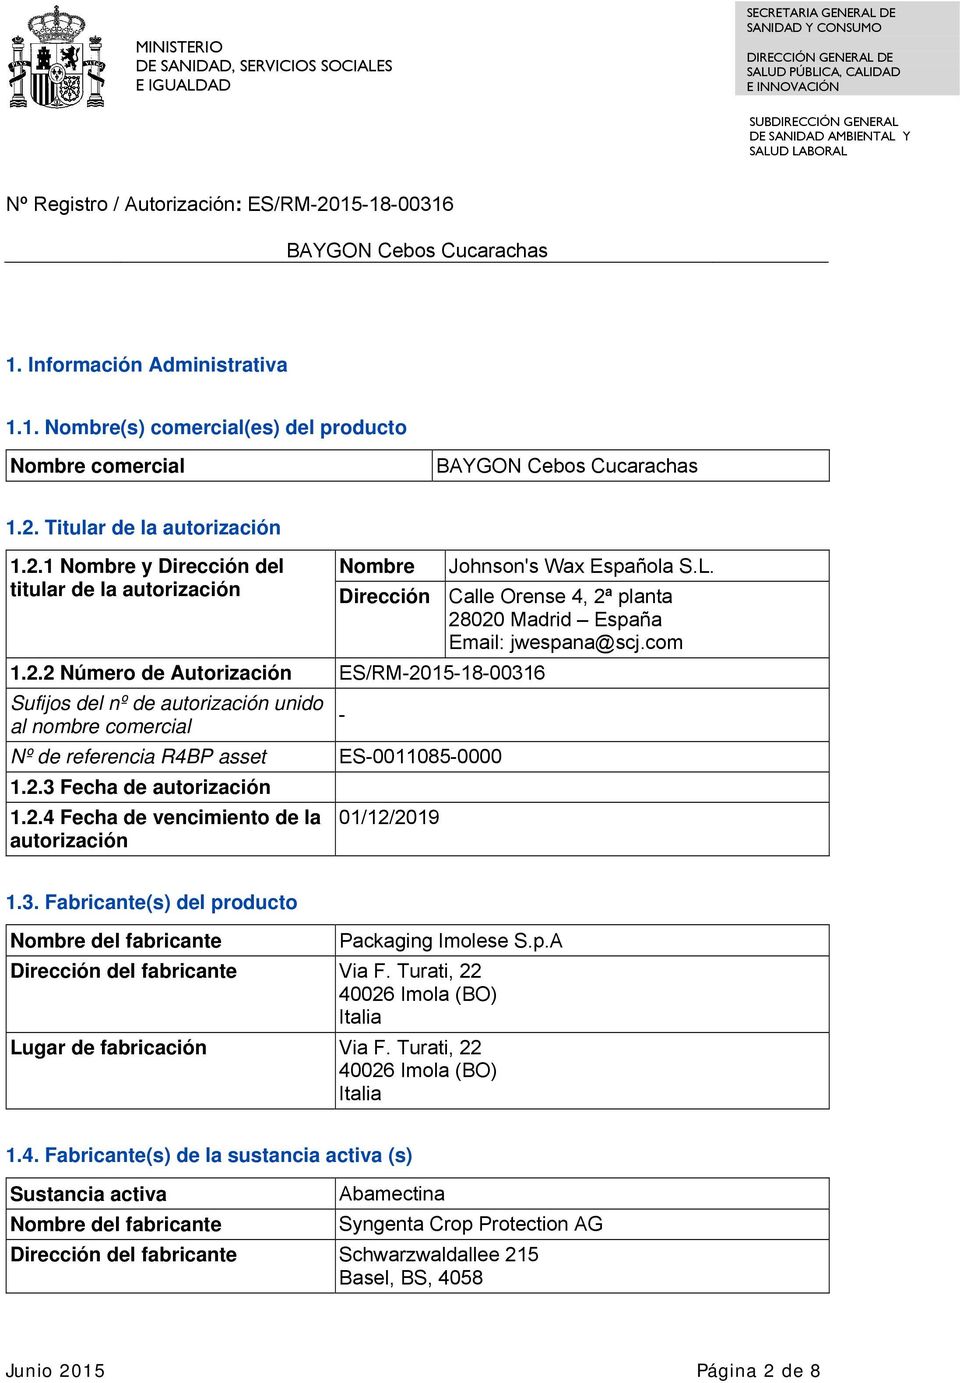 planta 28020 Madrid España Email: jwespana@scj.com 1.2.2 Número de Autorización ES/RM-2015-18-00316 Sufijos del nº de autorización unido al nombre comercial - Nº de referencia R4BP asset ES-0011085-0000 1.